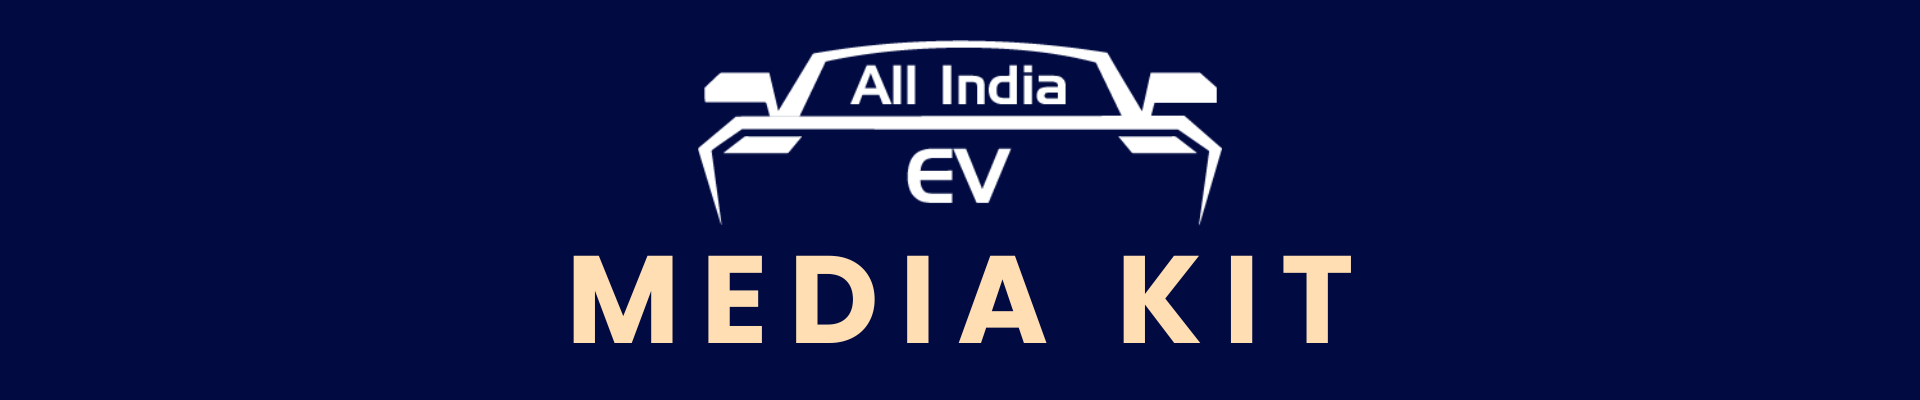 All India EV Media Kit